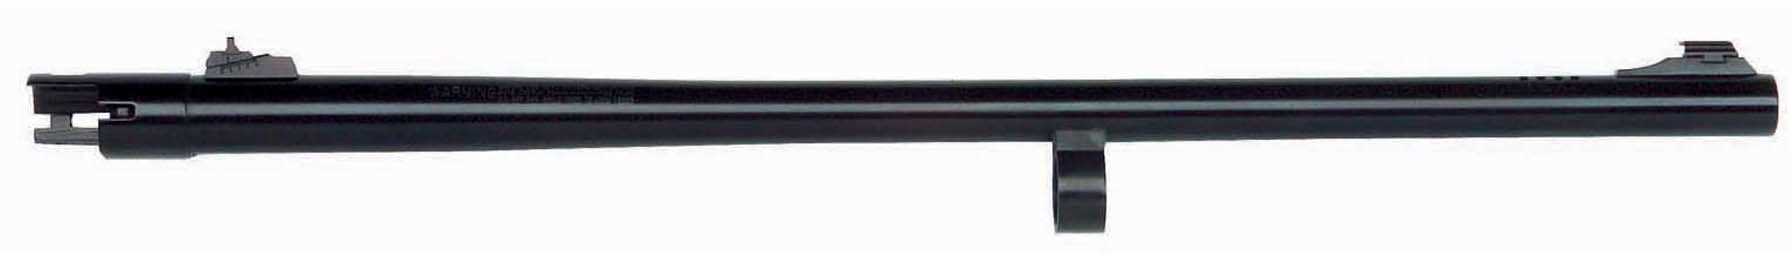 Mossberg 835 Slug Barrel 12 ga. 24 in. Rifle Sights Fully Rifled Blue Model: 92802